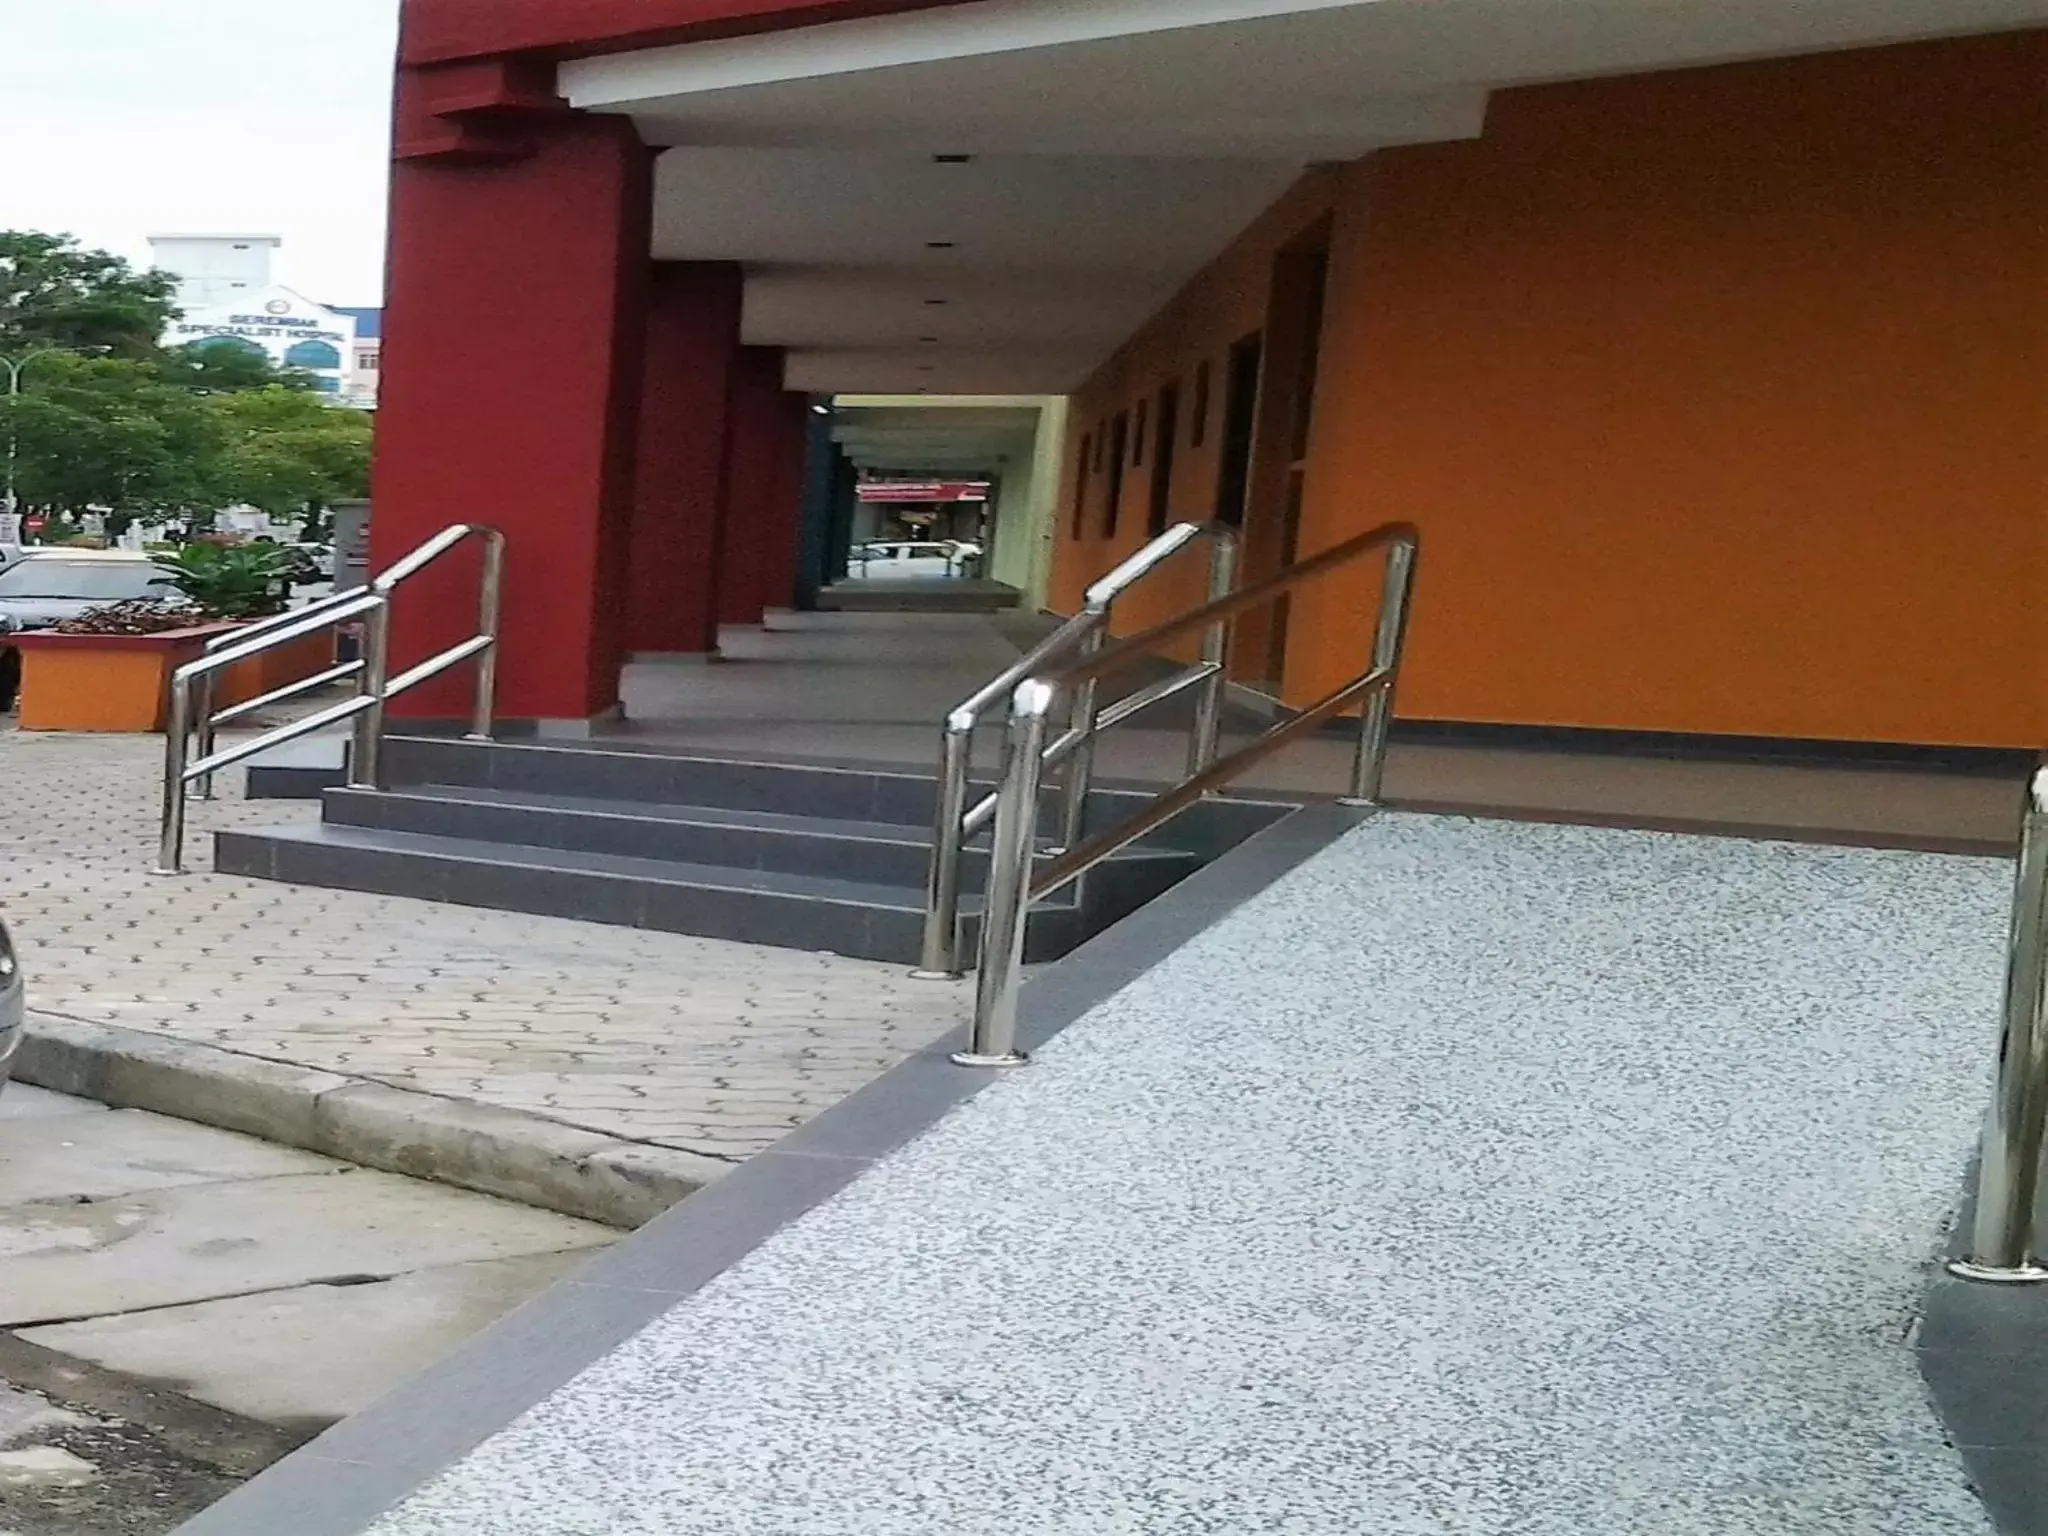 Area and facilities in Suria Seremban Hotel